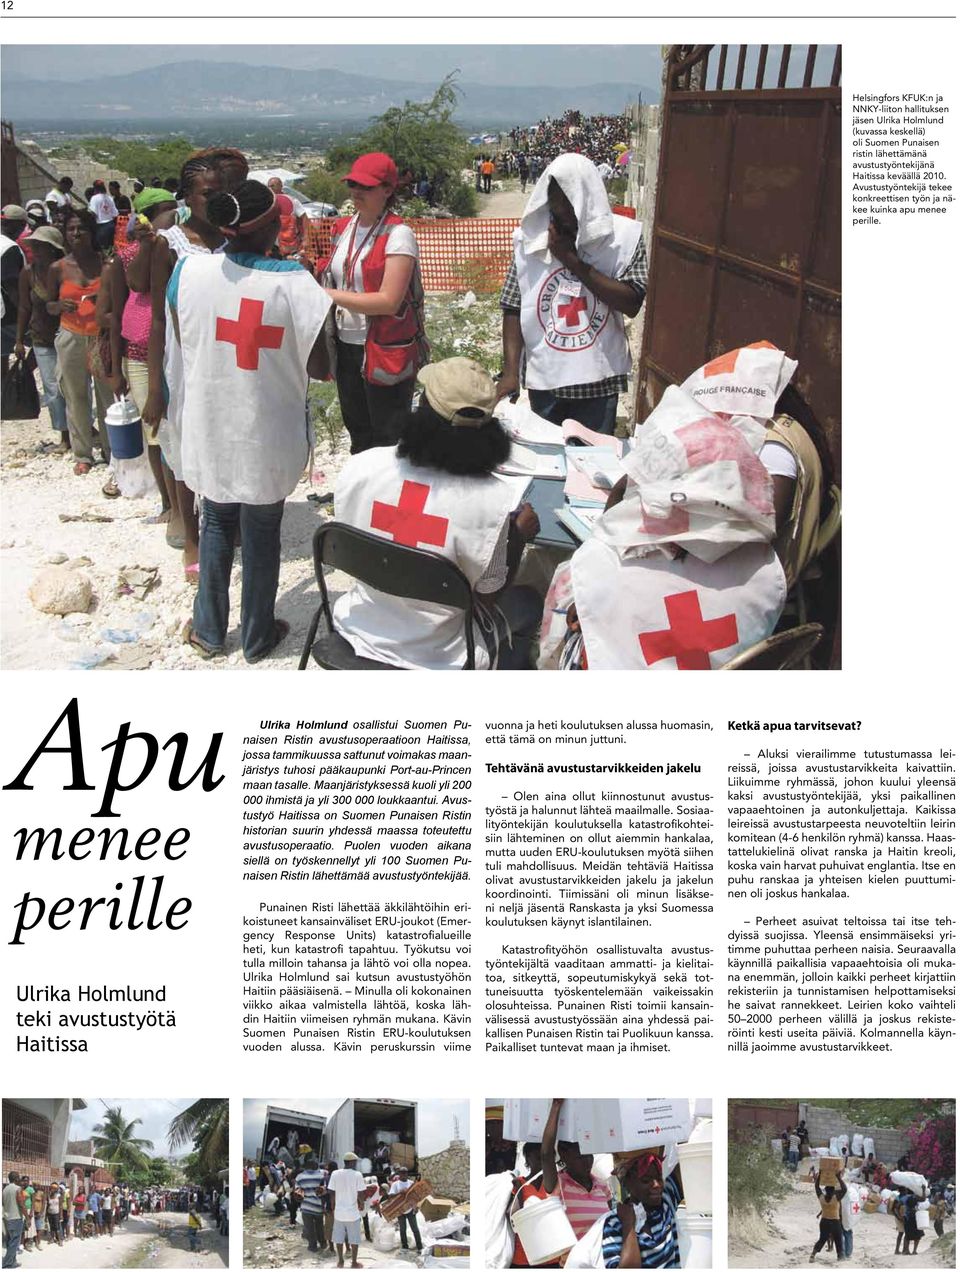 Apu menee perille Ulrika Holmlund teki avustustyötä Haitissa Ulrika Holmlund osallistui Suomen Punaisen Ristin avustusoperaatioon Haitissa, jossa tammikuussa sattunut voimakas maanjäristys tuhosi